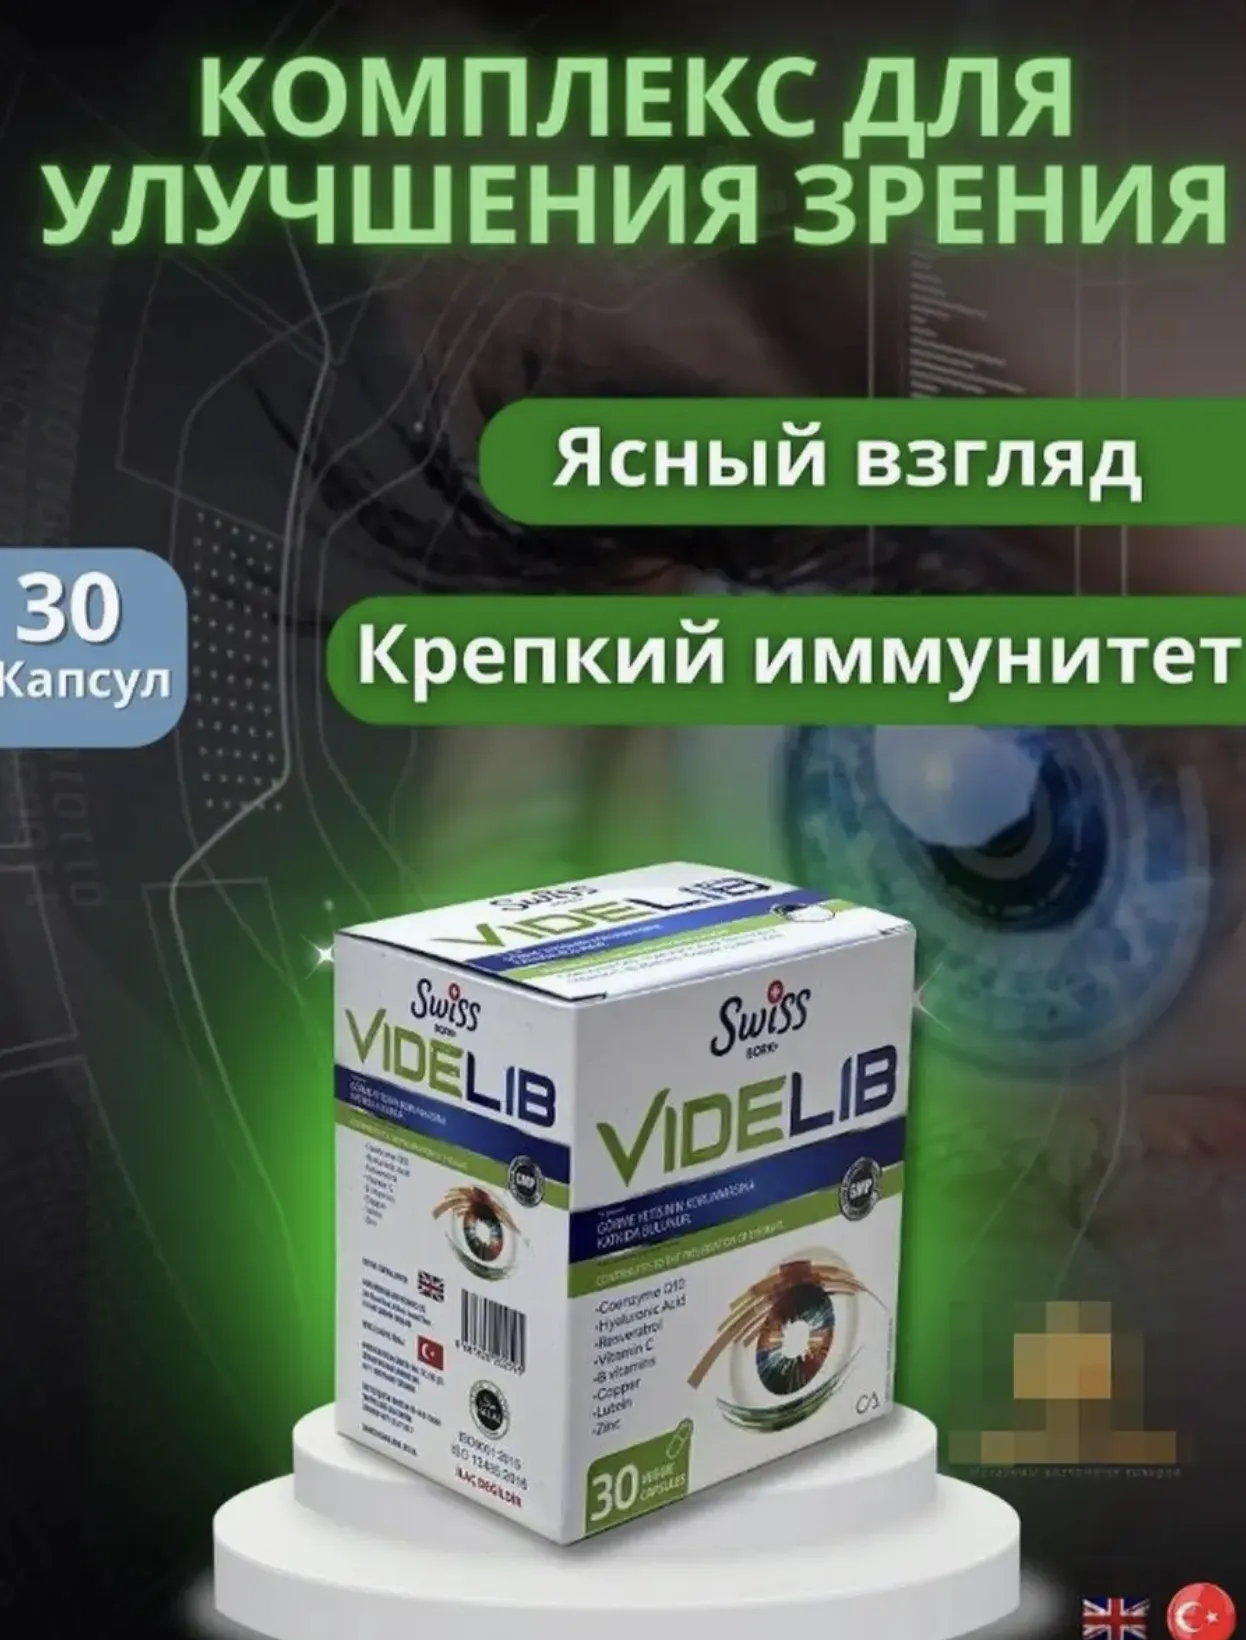 Комплекс витаминов для здоровья глаз и сохранения зрения Swiss bork Videlib#1